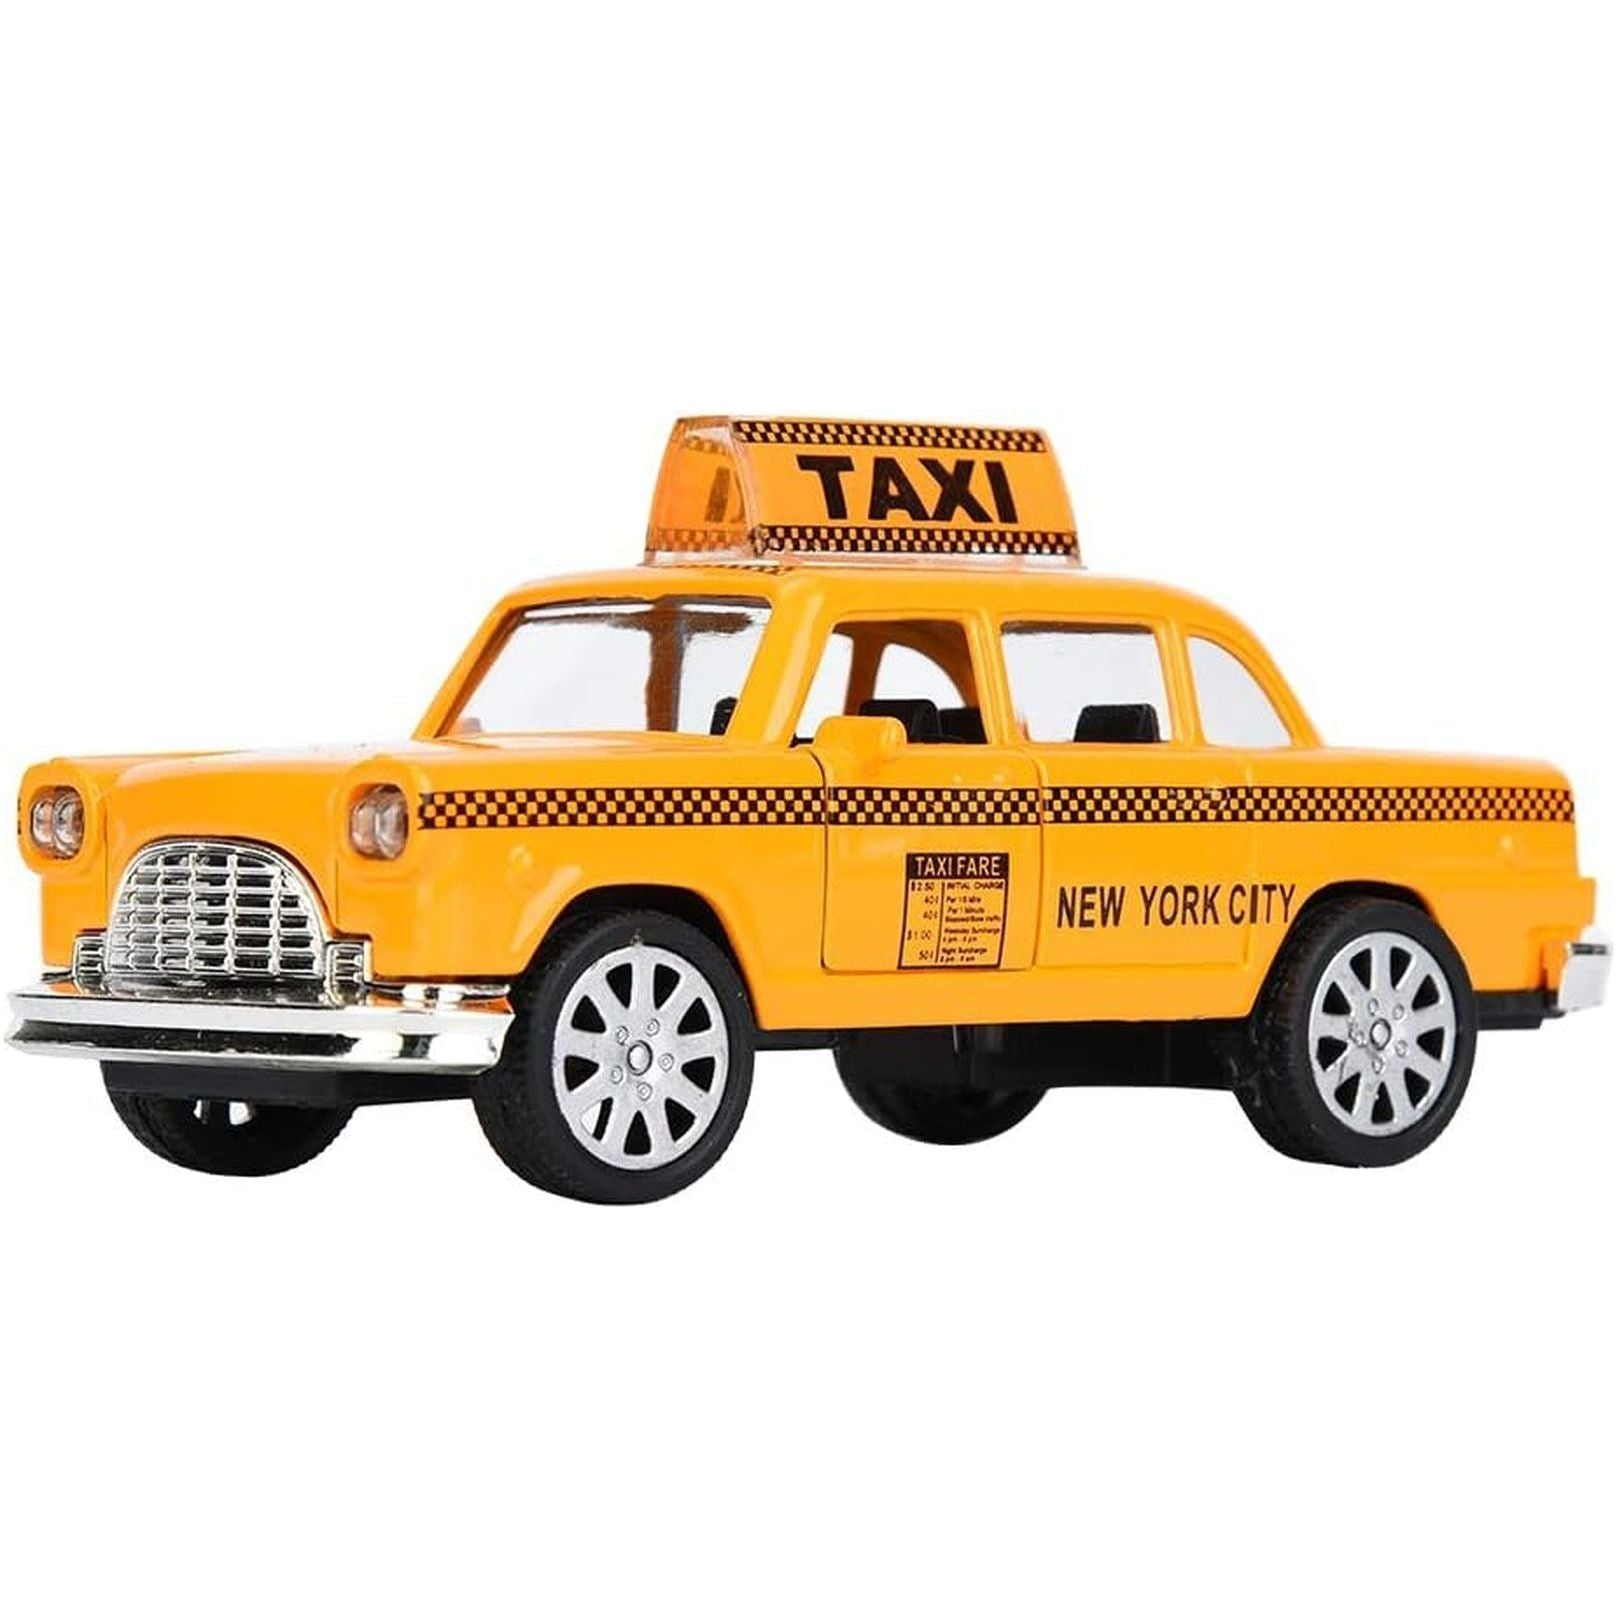  Yellow Taxi Car